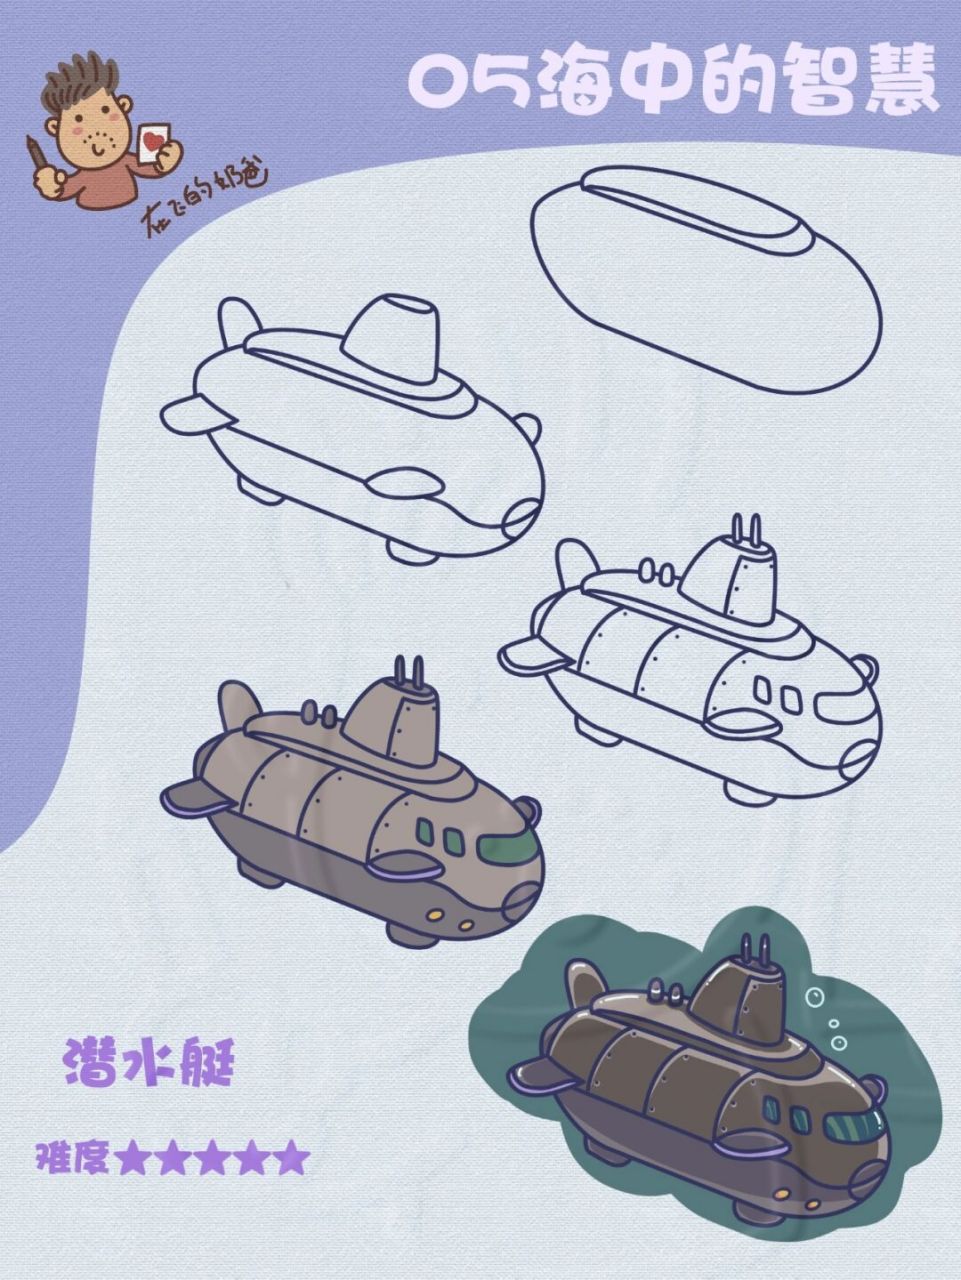 中国核潜艇简笔画军用图片